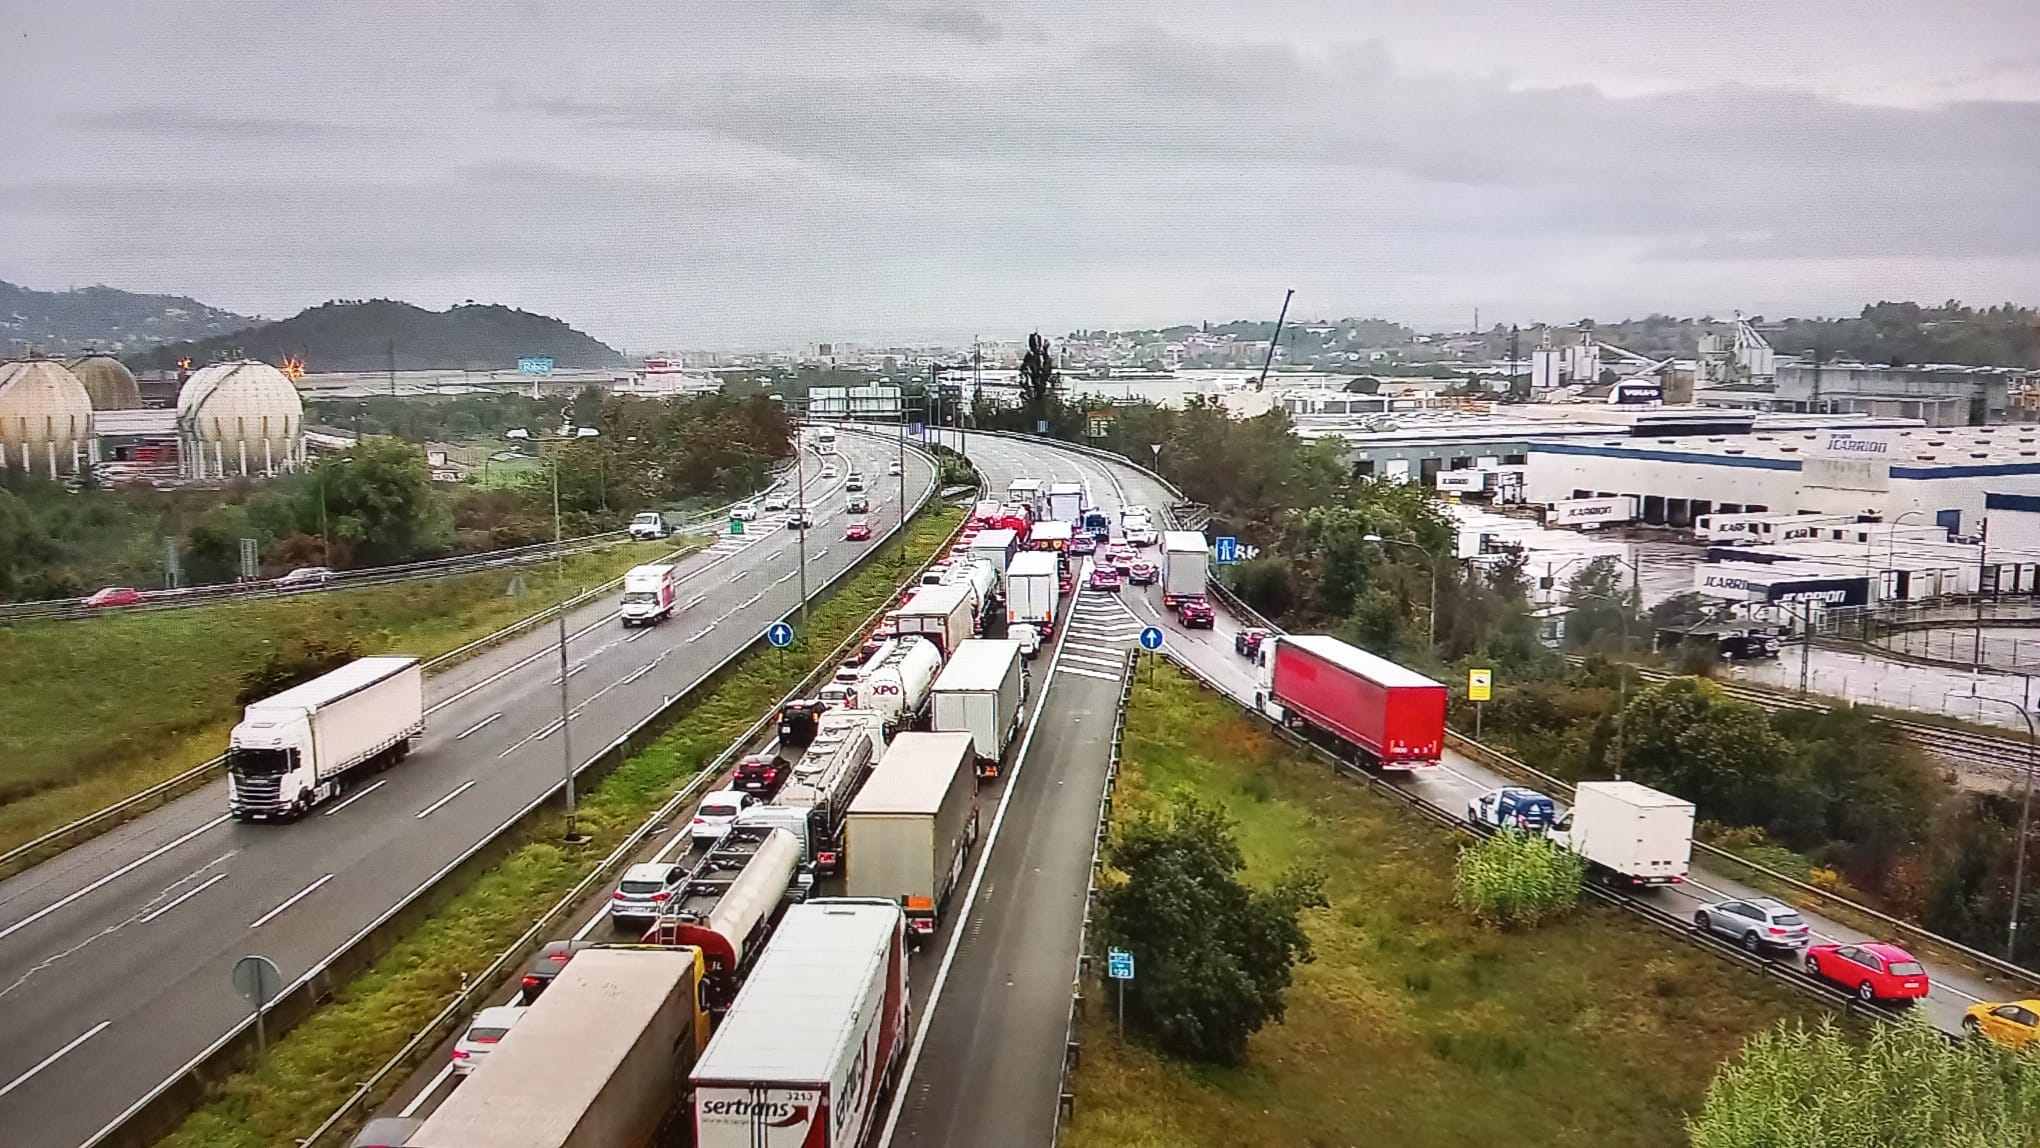 Mañana caótica en las carreteras catalanas: colas kilométricas por un accidente mortal en la ronda de Dalt